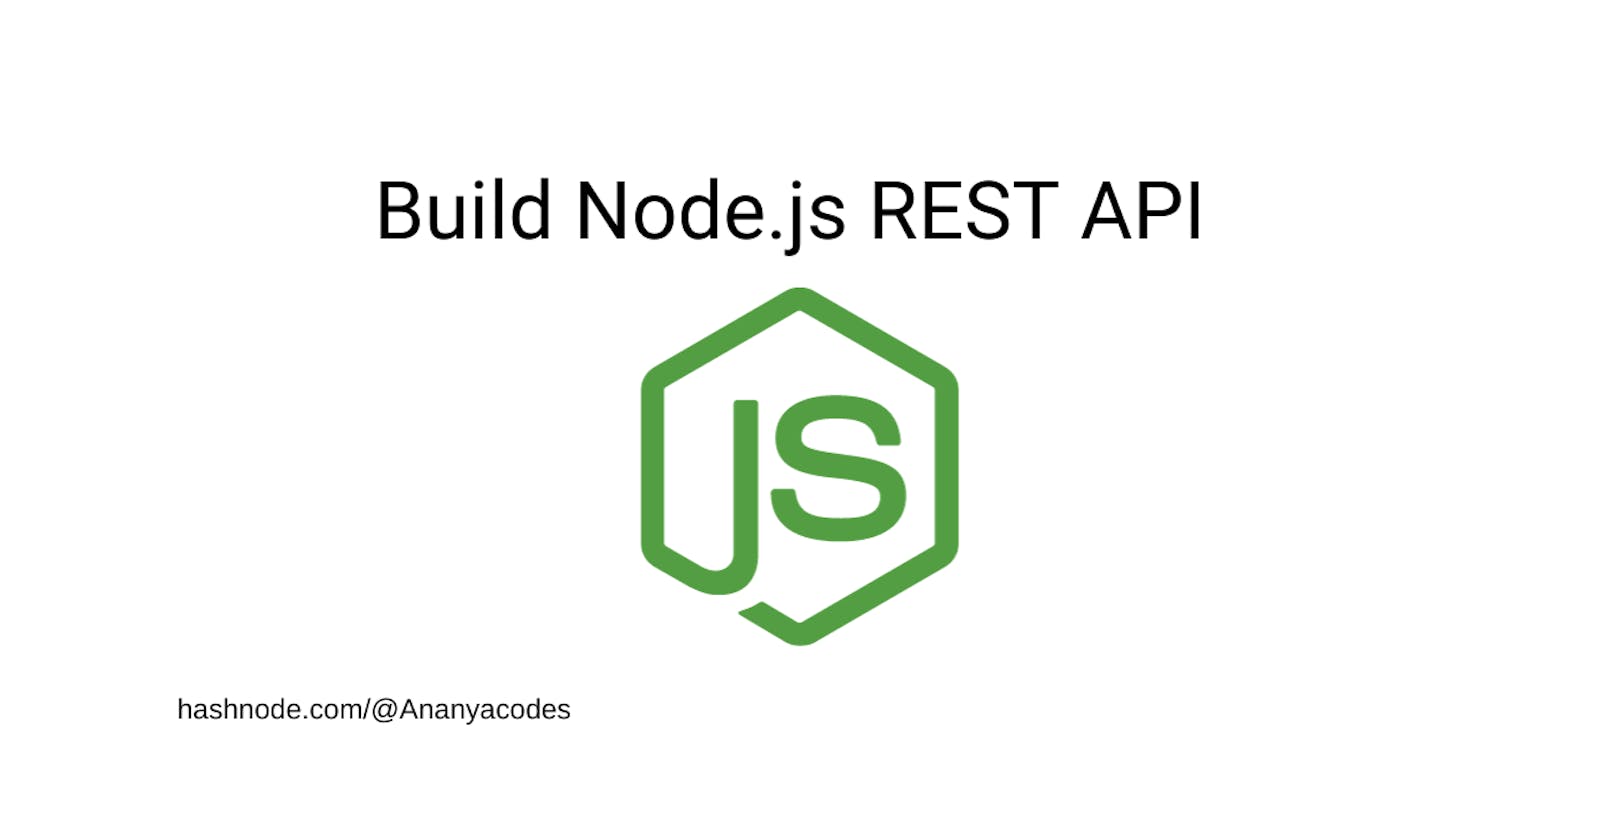 Build Node.js REST API